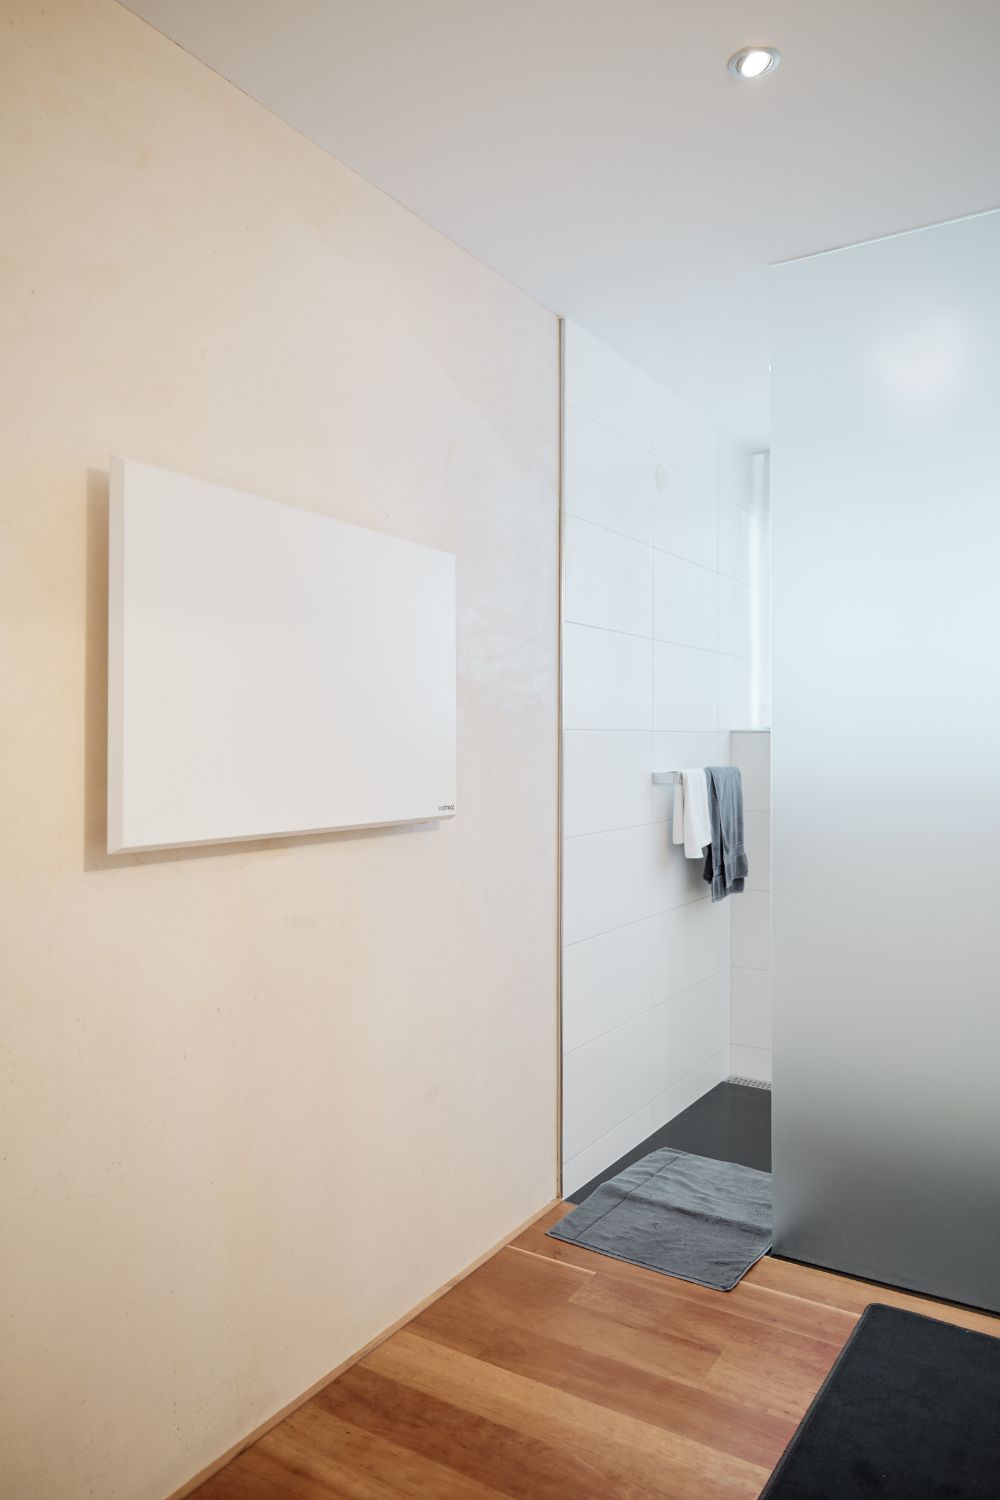 Eine ecoheat Classic-T Infrarotheizung ist an der Wand neben der Dusche montiert.